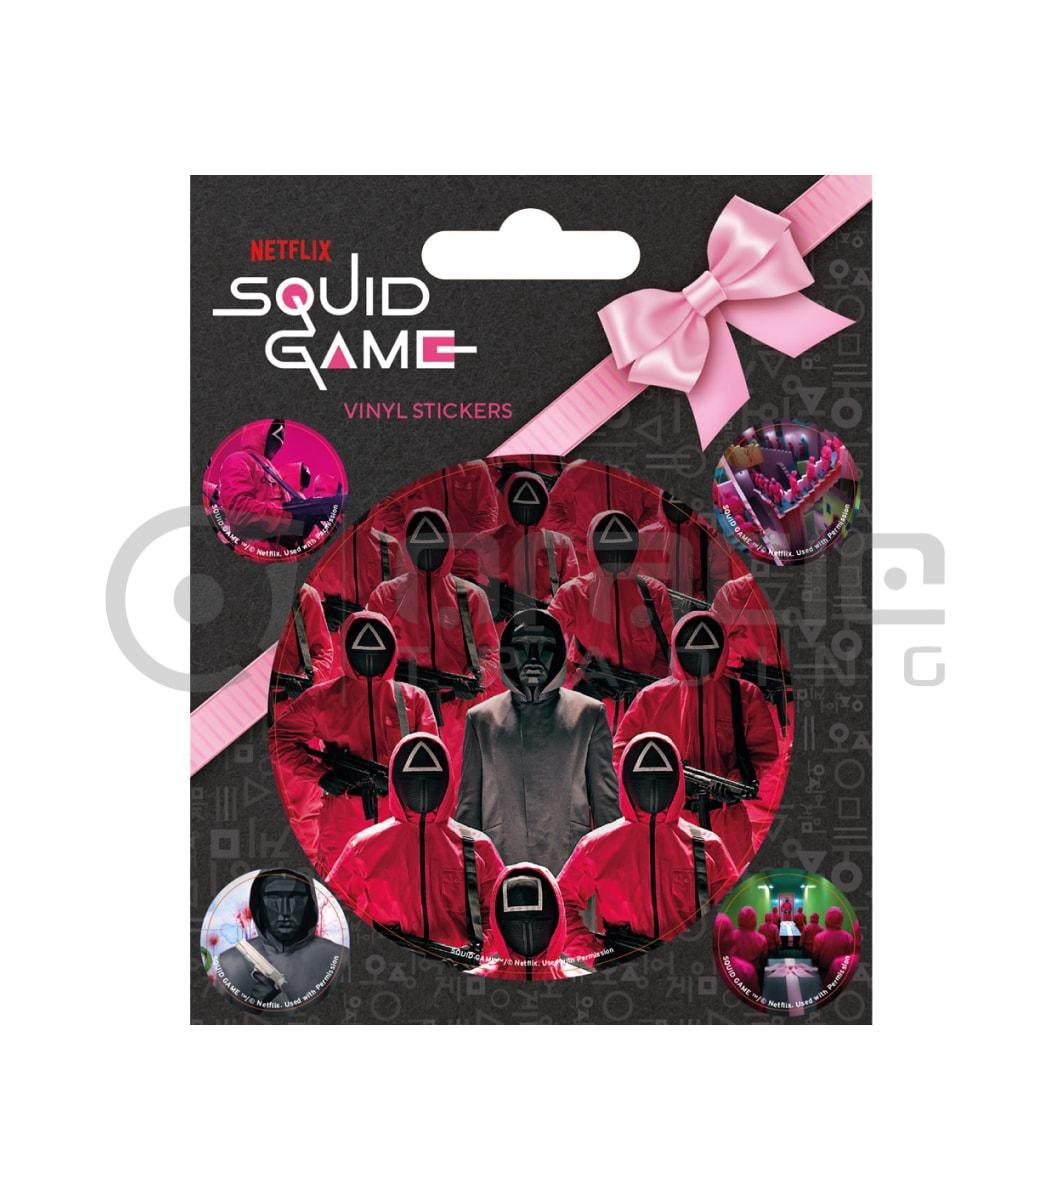 Squid Game Vinyl Sticker Pack